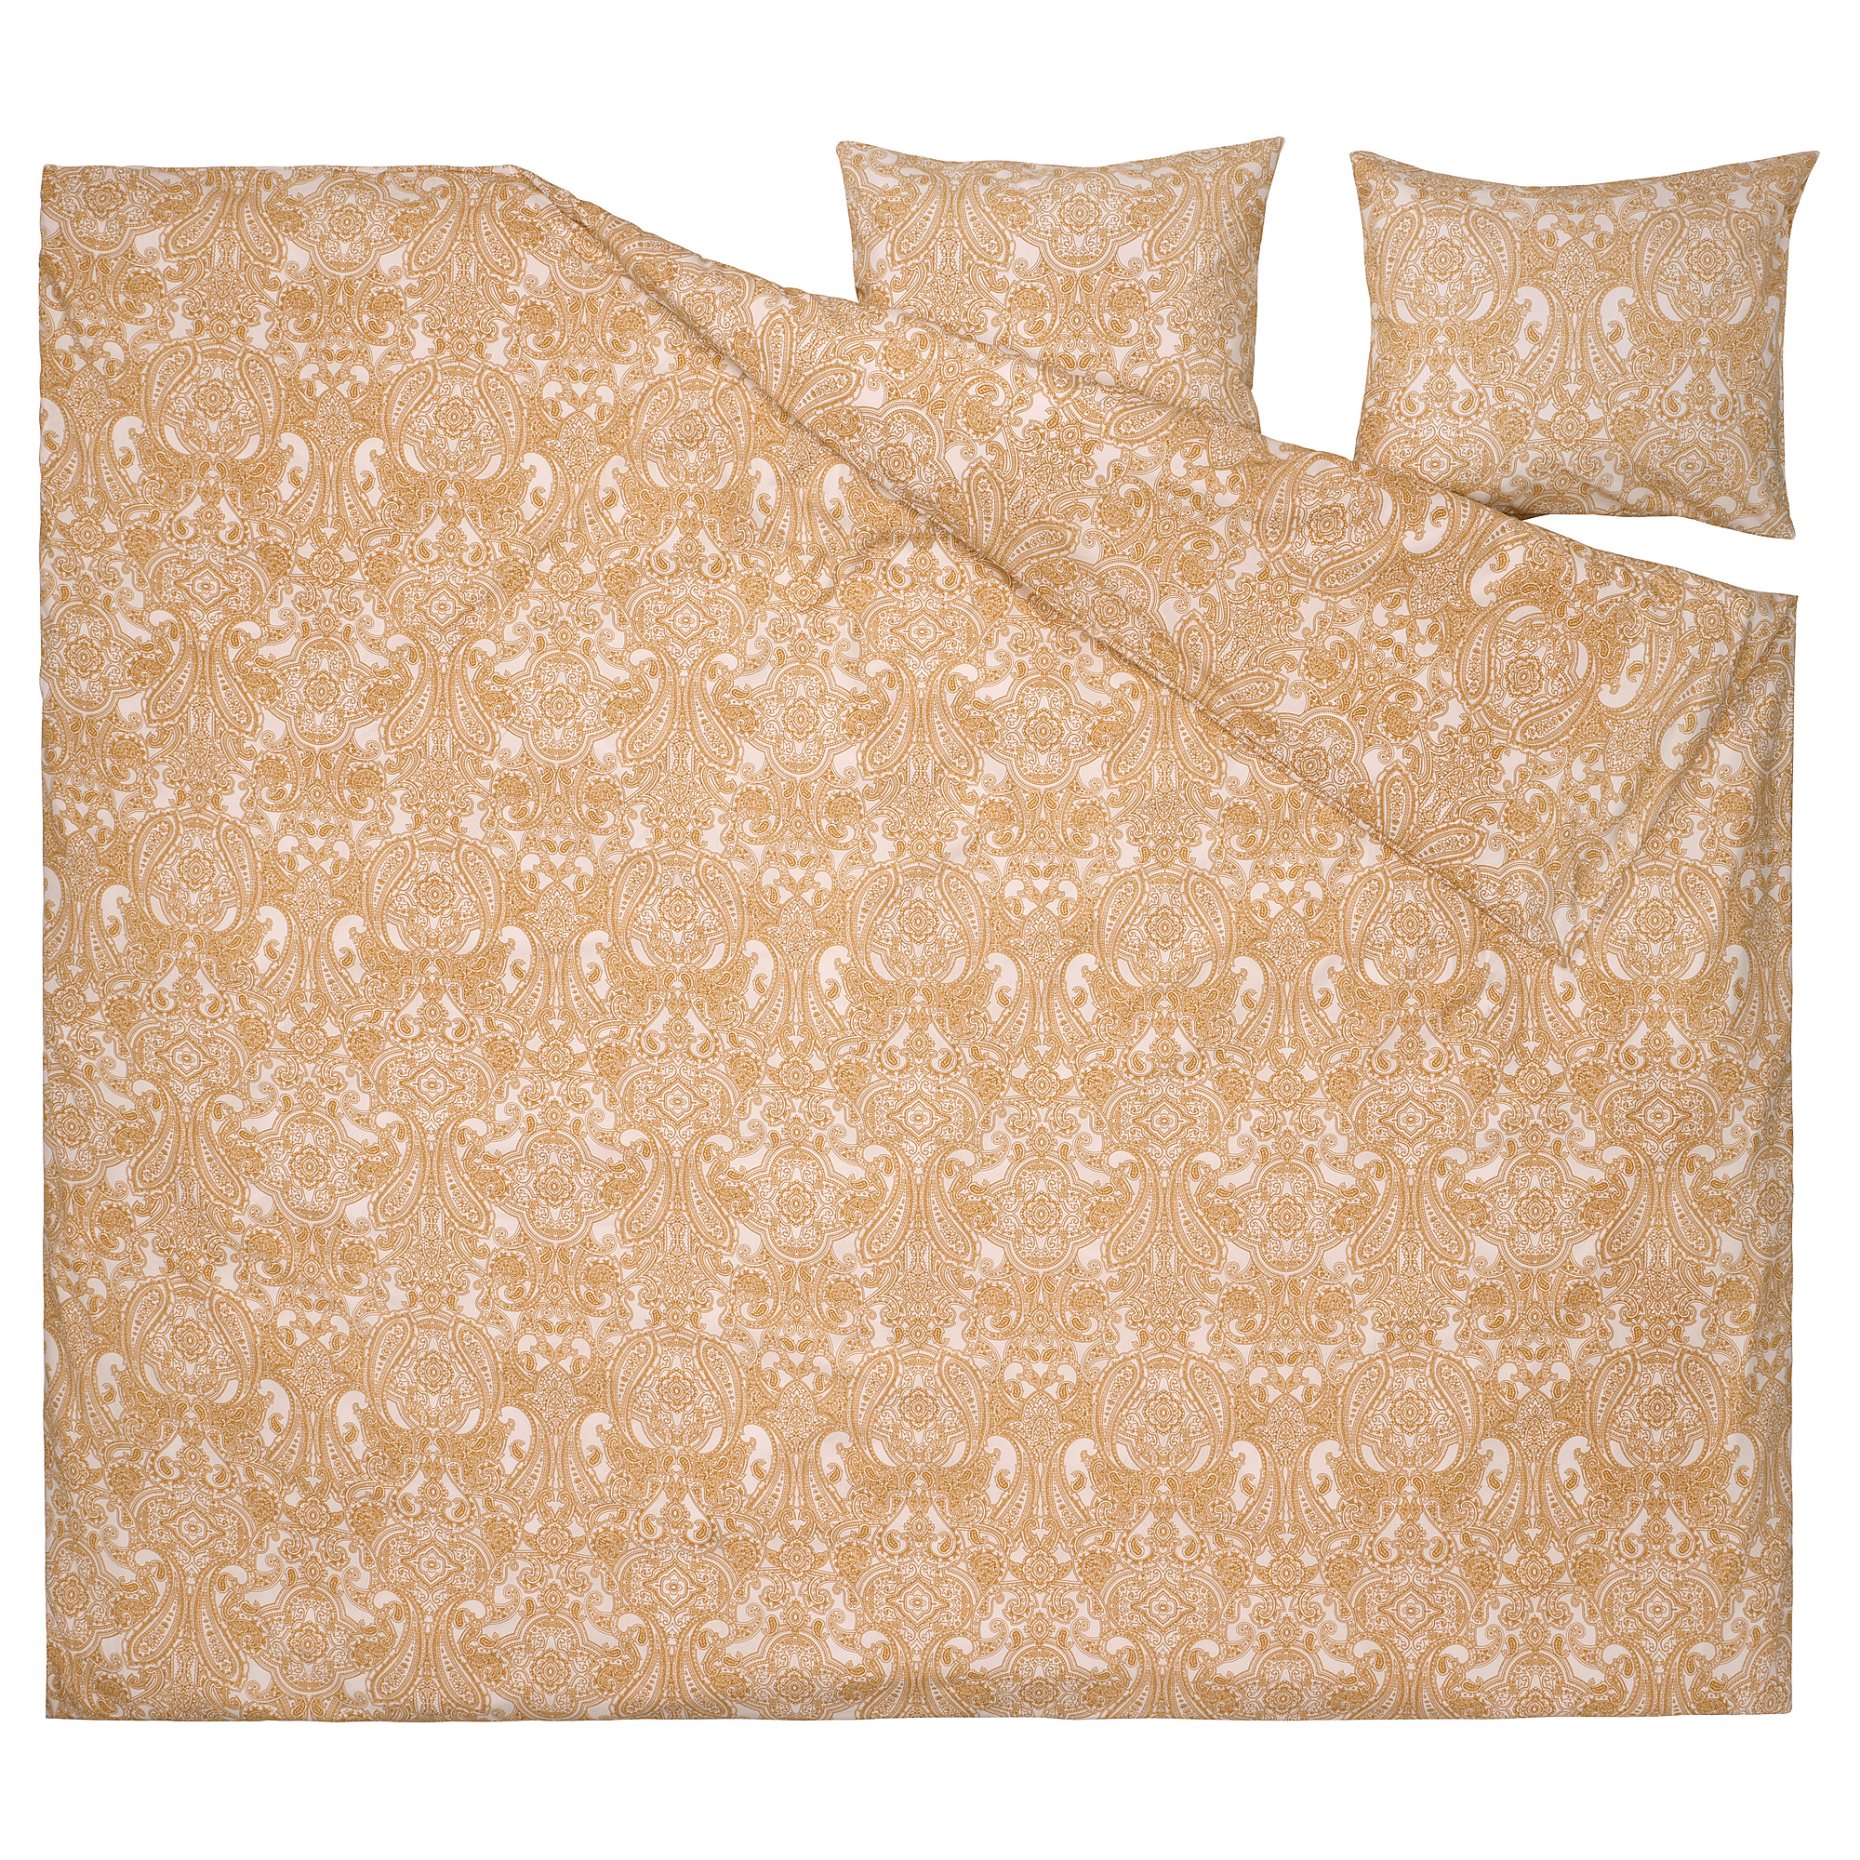 JÄTTEVALLMO, duvet cover and 2 pillowcases, 240x220/50x60 cm, 505.469.70